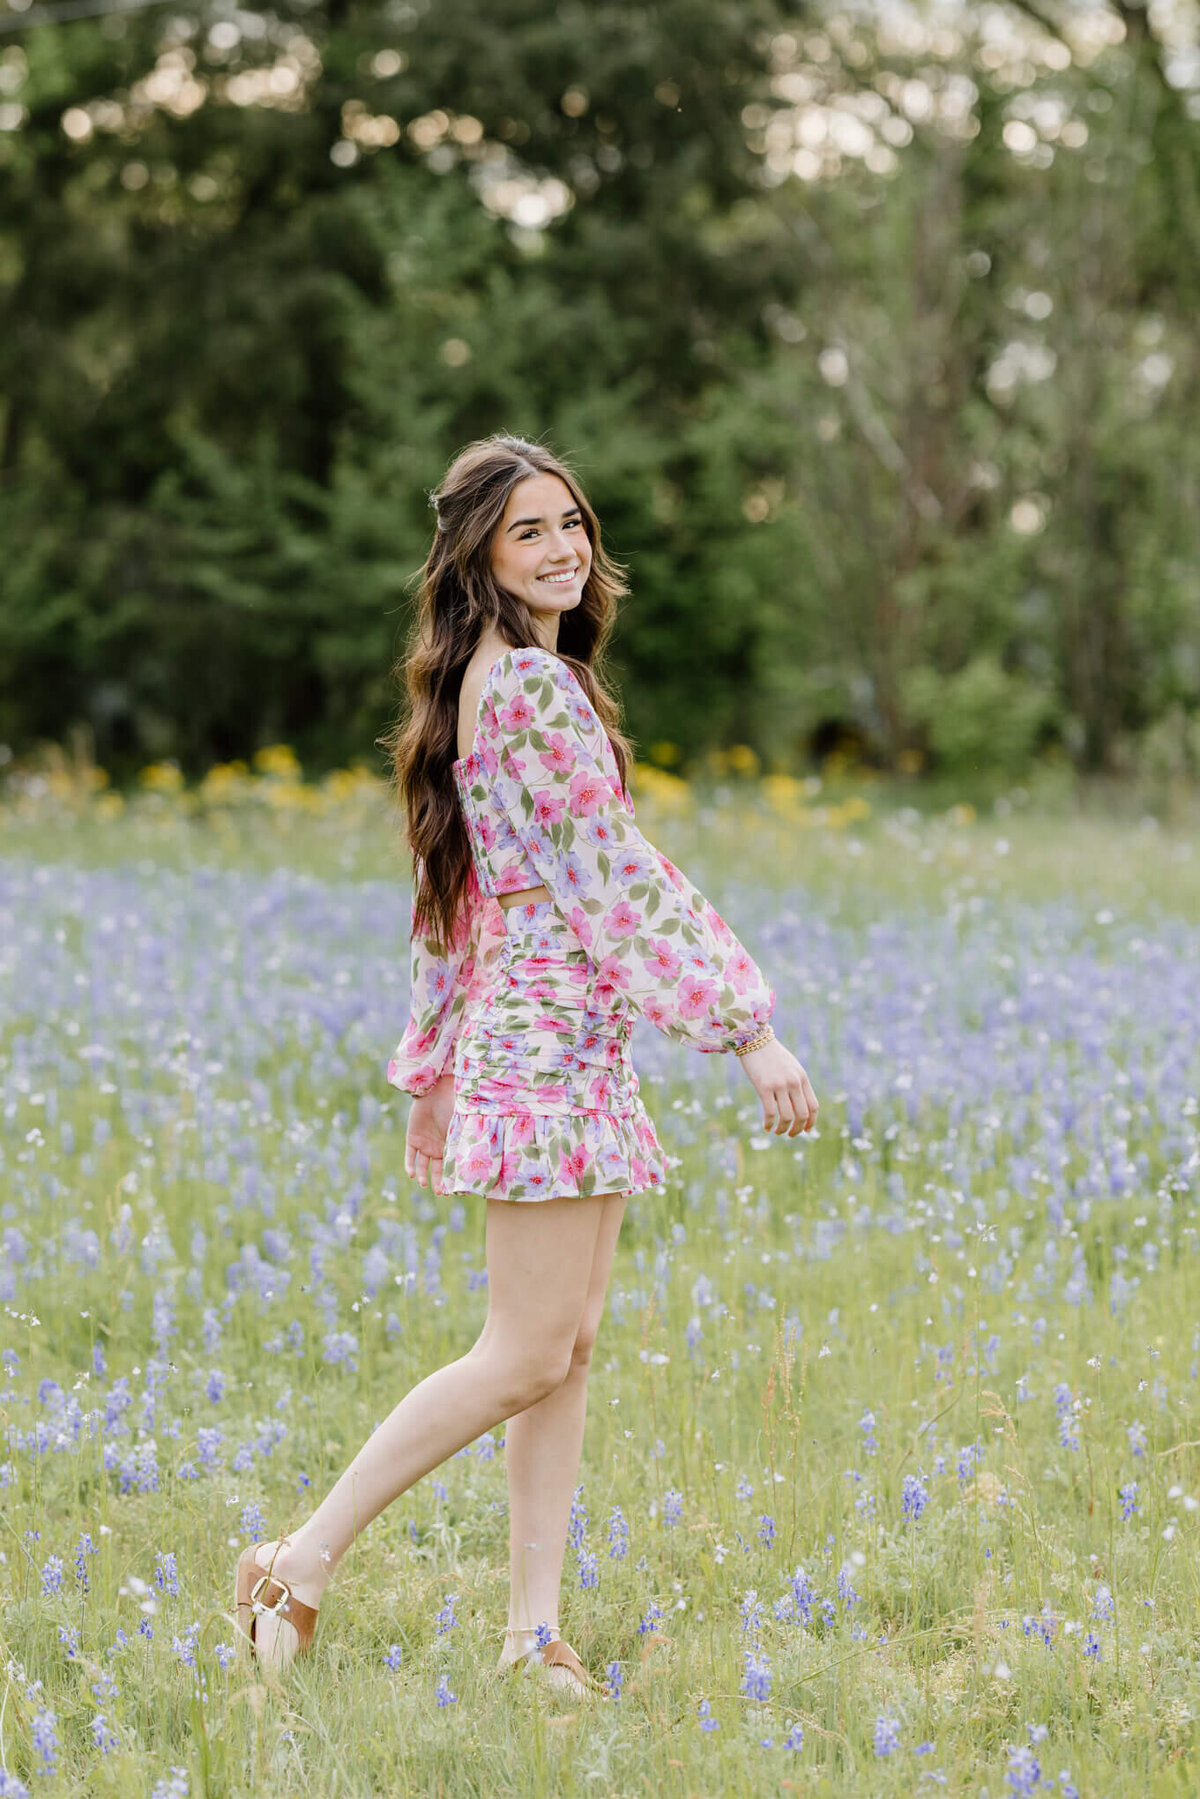 portrait of graduate in pink floral dress walking through field of bluebonnets